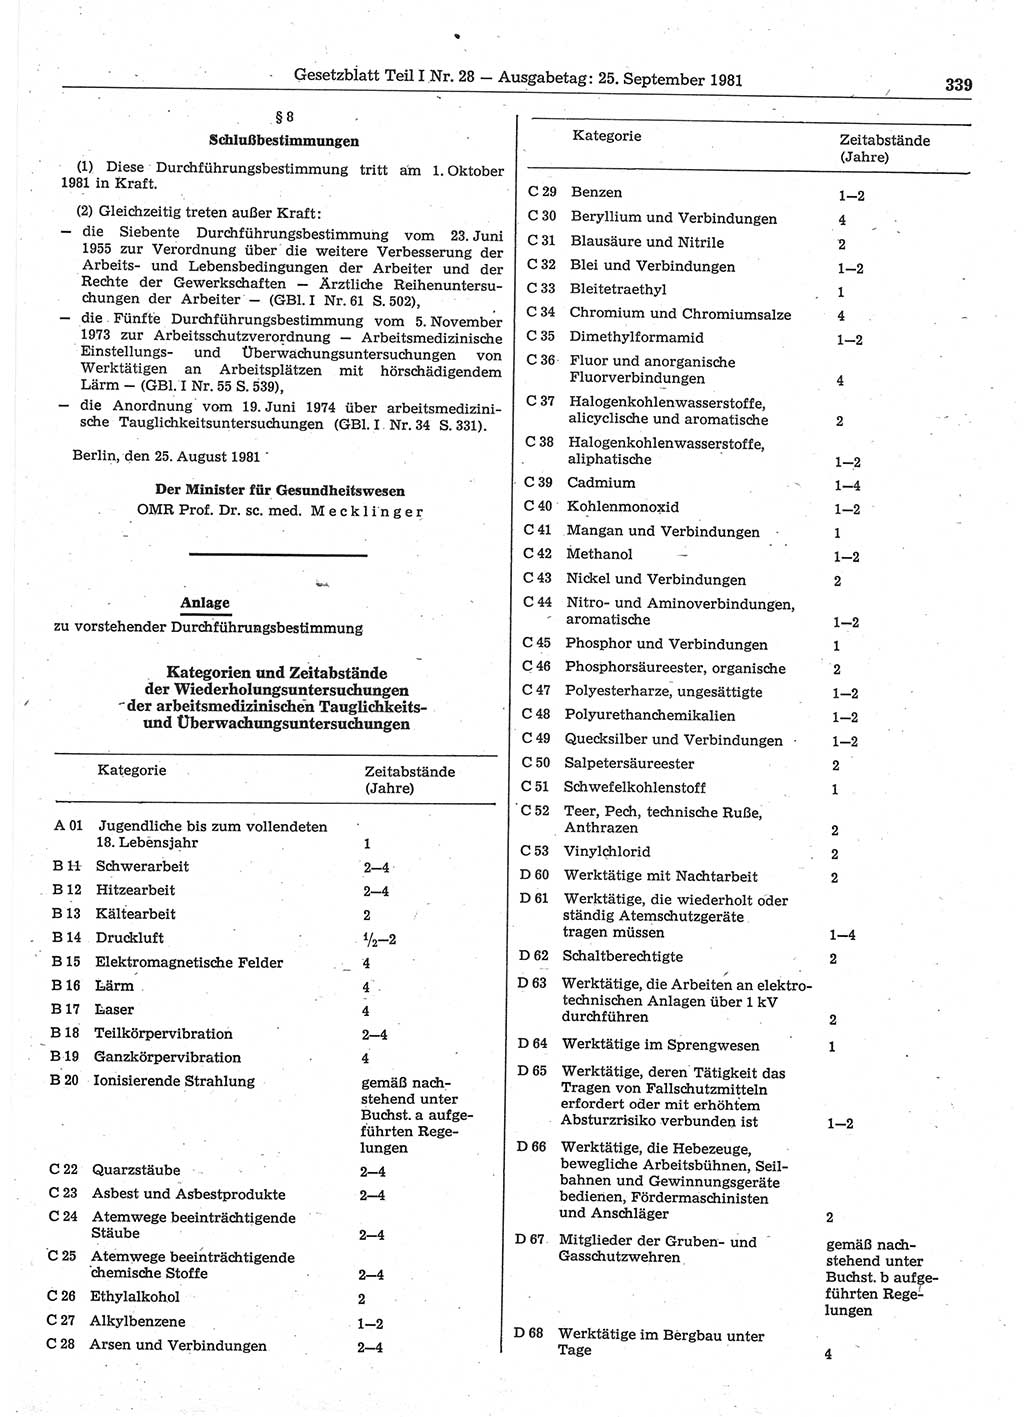 Gesetzblatt (GBl.) der Deutschen Demokratischen Republik (DDR) Teil Ⅰ 1981, Seite 339 (GBl. DDR Ⅰ 1981, S. 339)